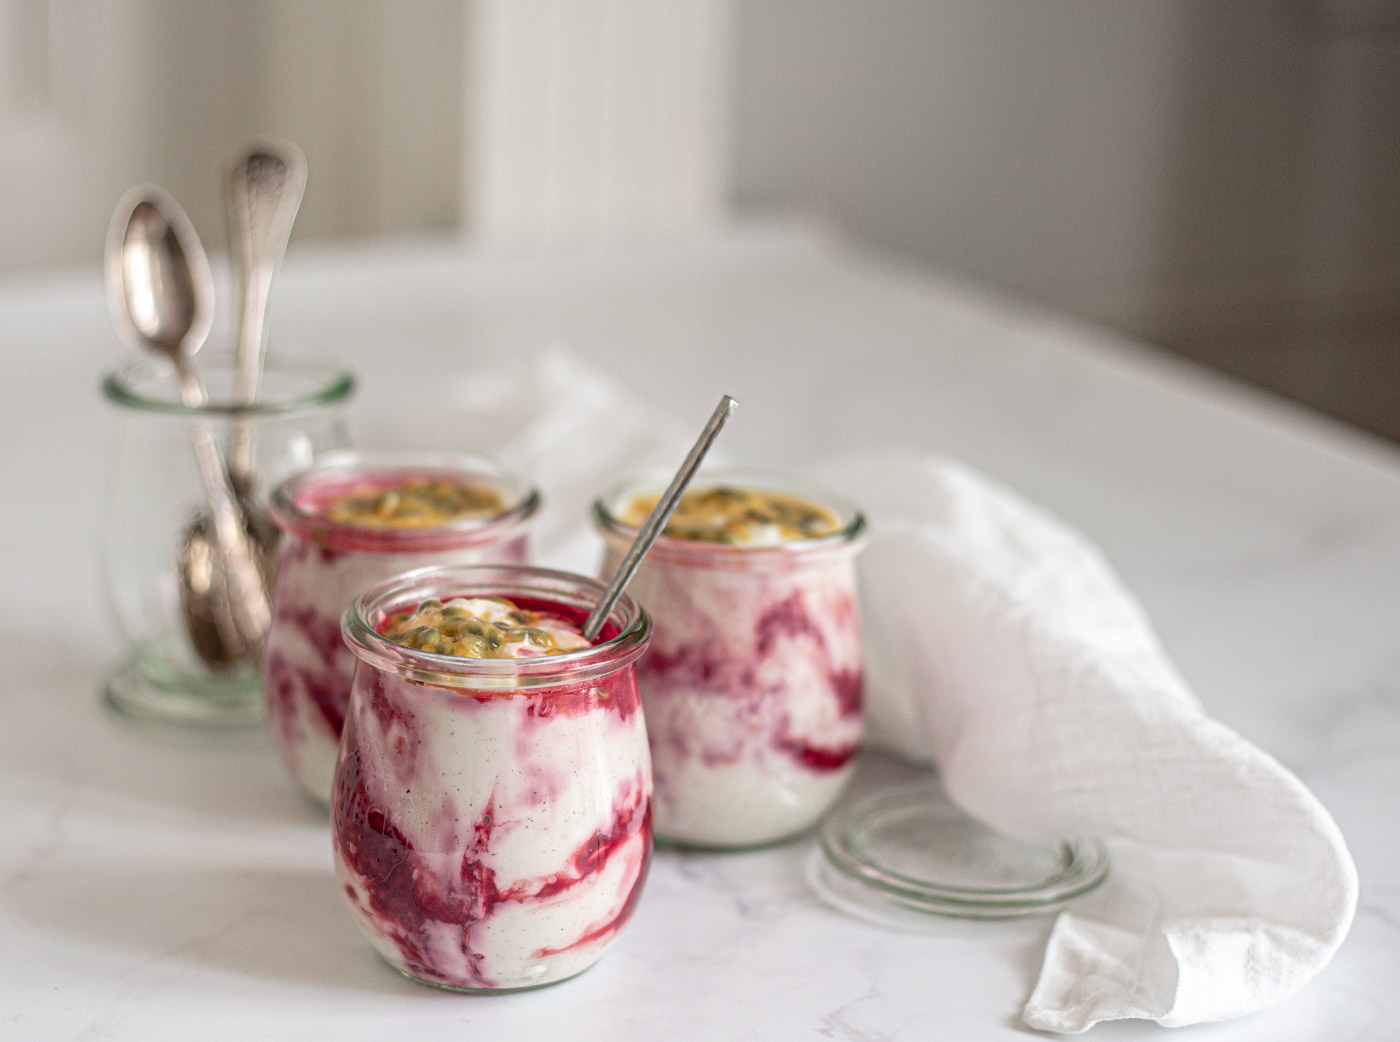 Vegan yogurt dessert in jar